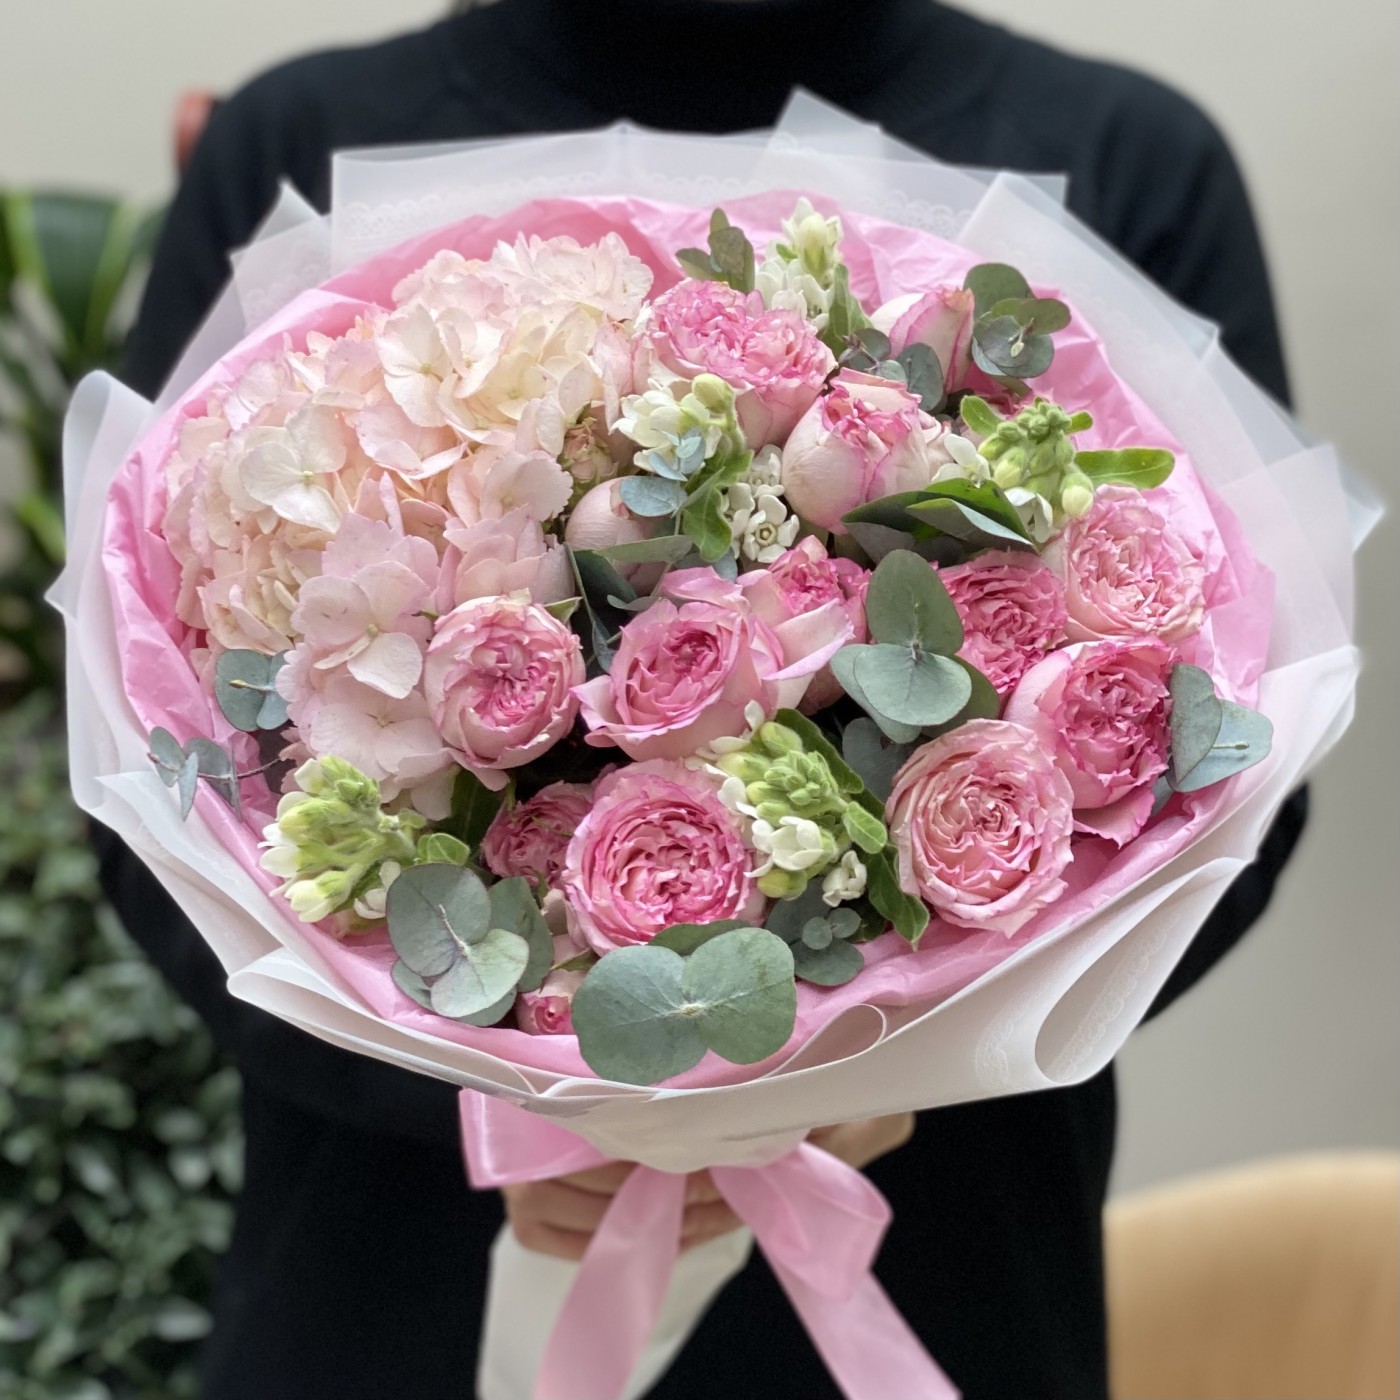 Нежный букет с розовой гортензией и пионовидными розами Пинк Блоссом